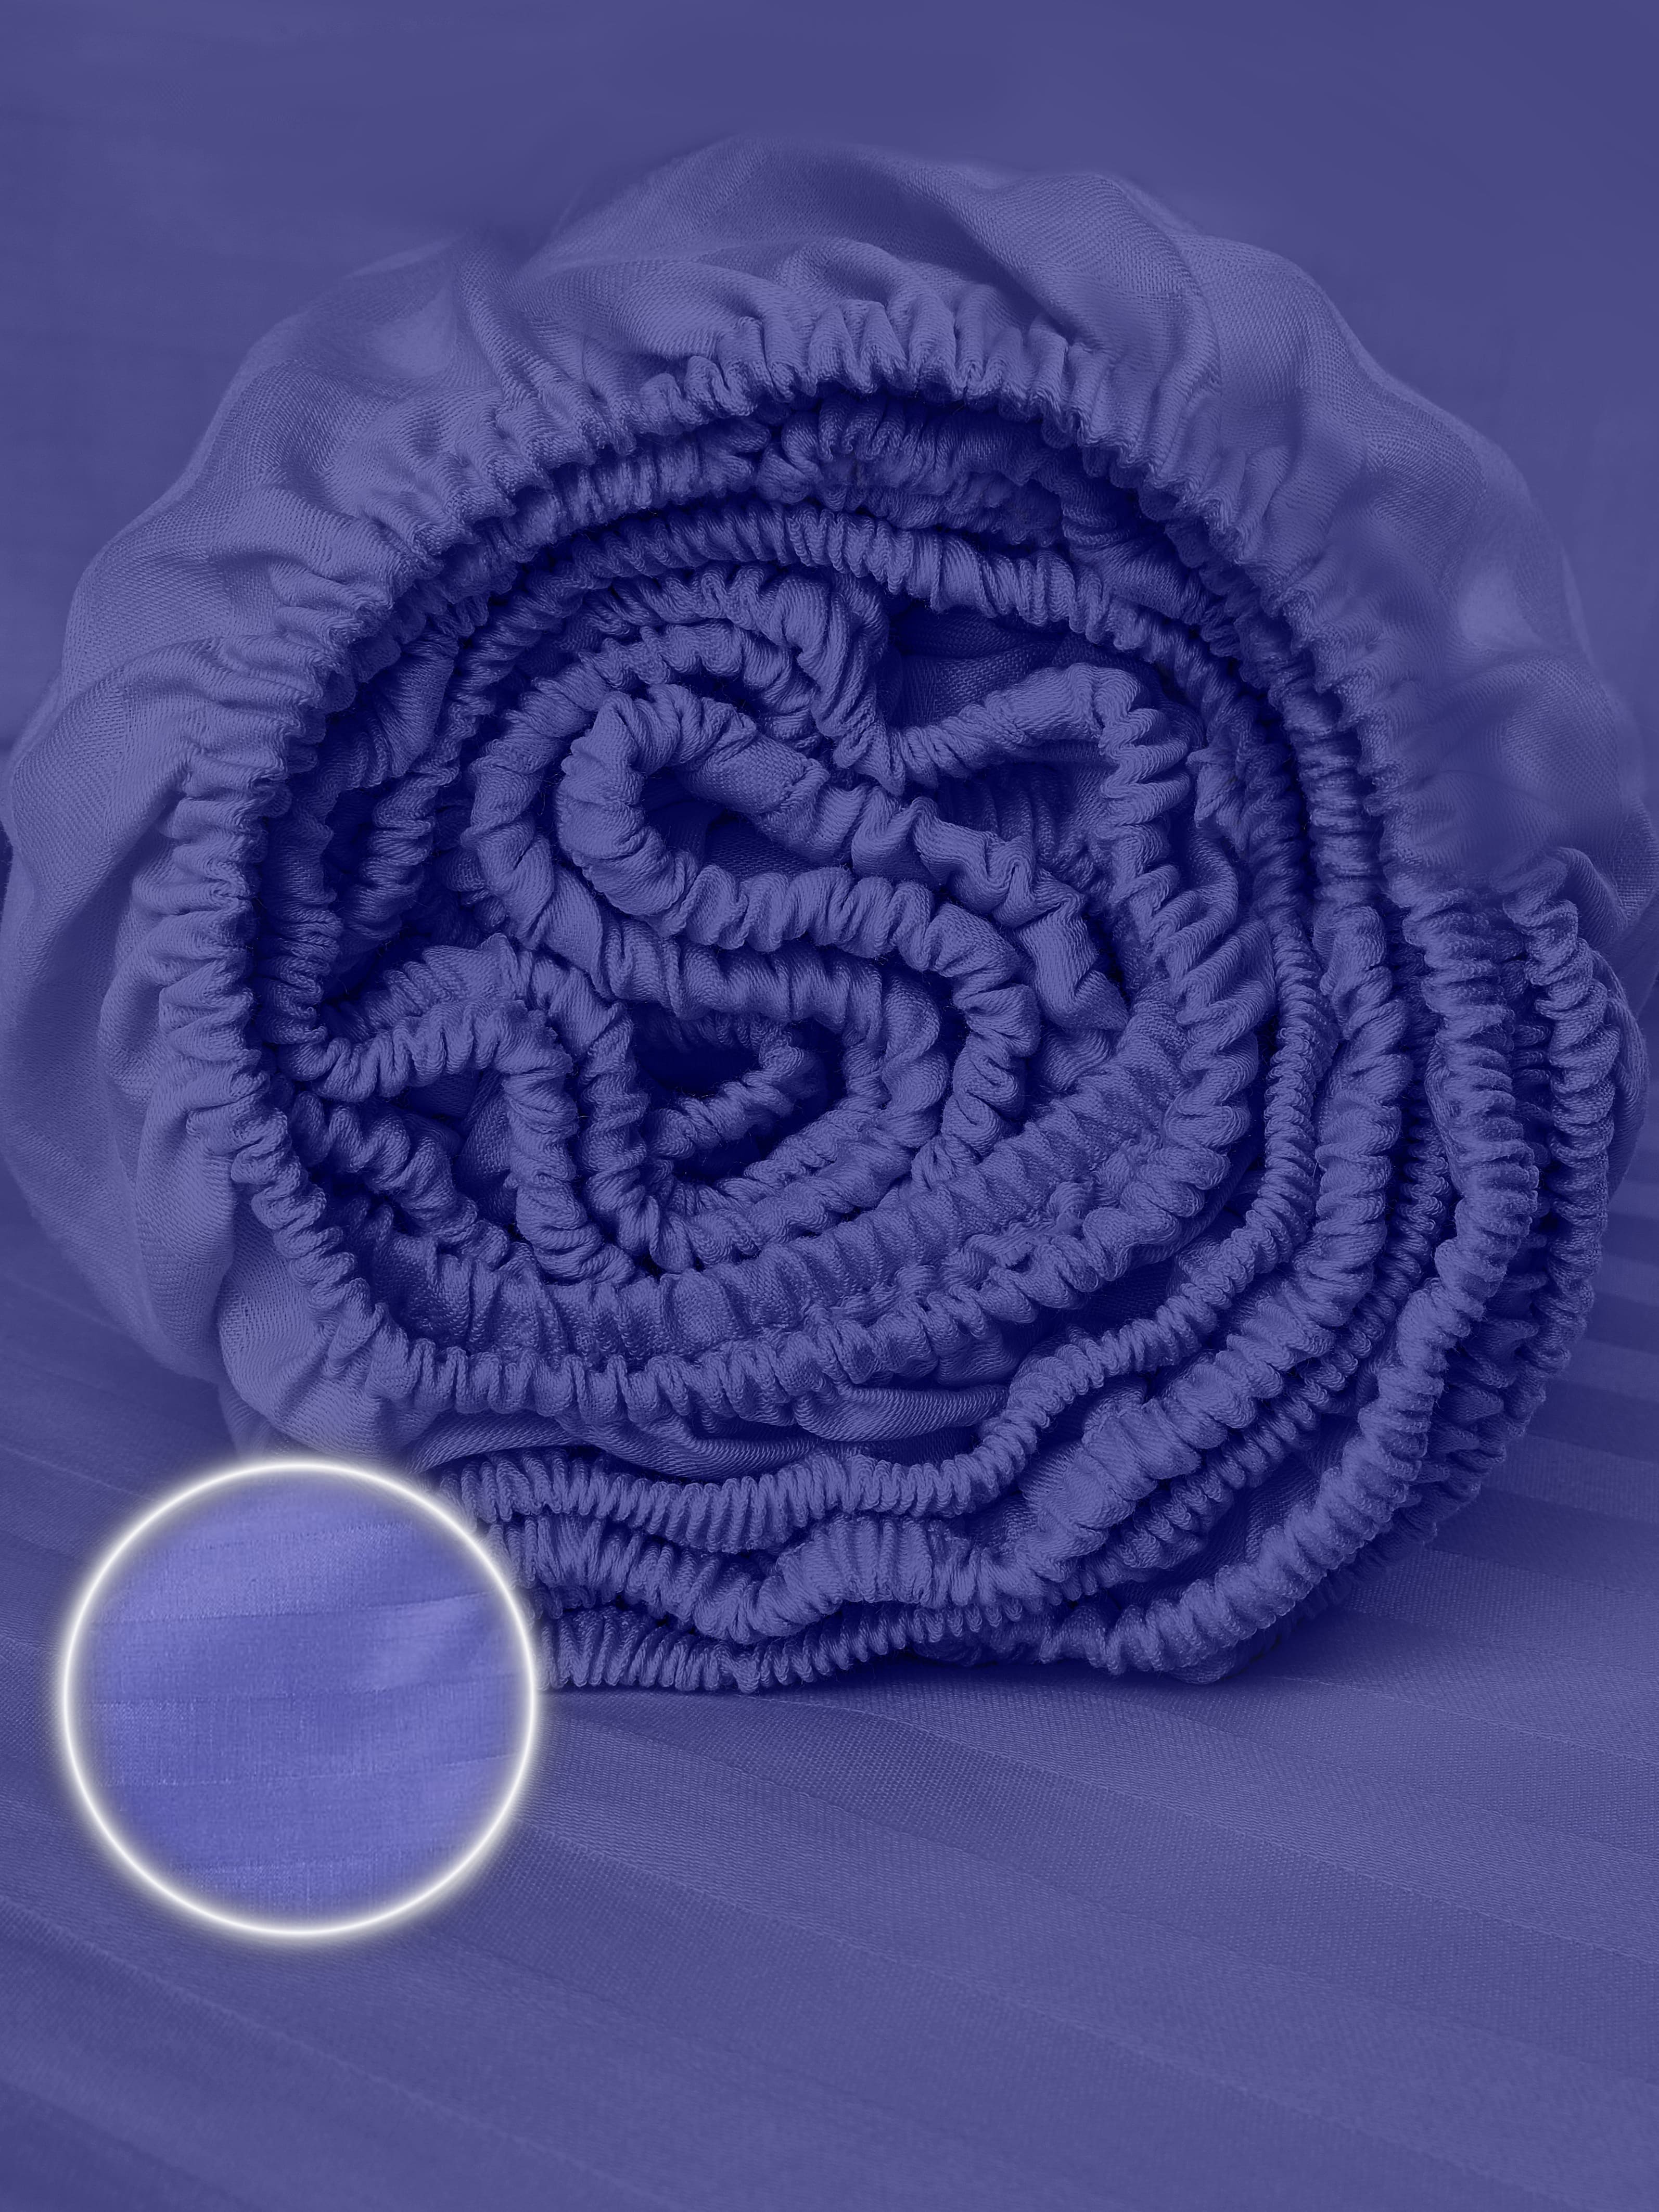 фото Простыня на резинке, натяжная, плотный сатин, ventura life 160х200х25, темно-фиолетовый